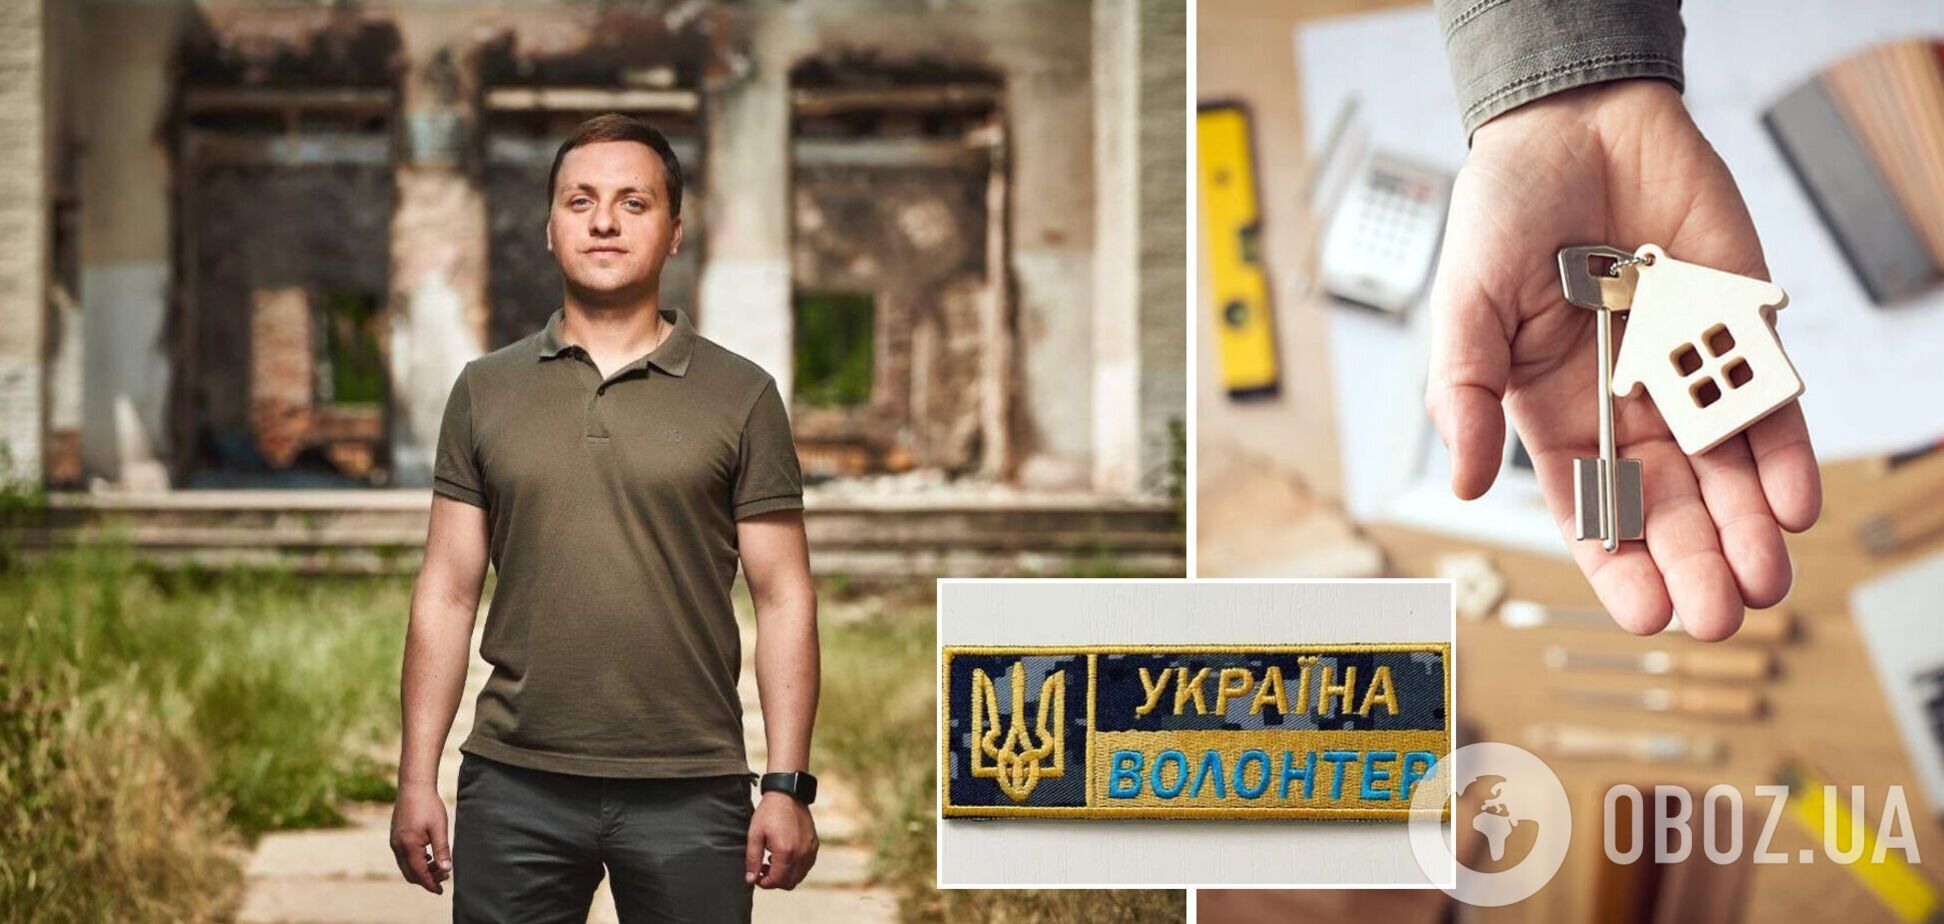 В Украине предложили упростить получение в аренду помещений для волонтерских организаций